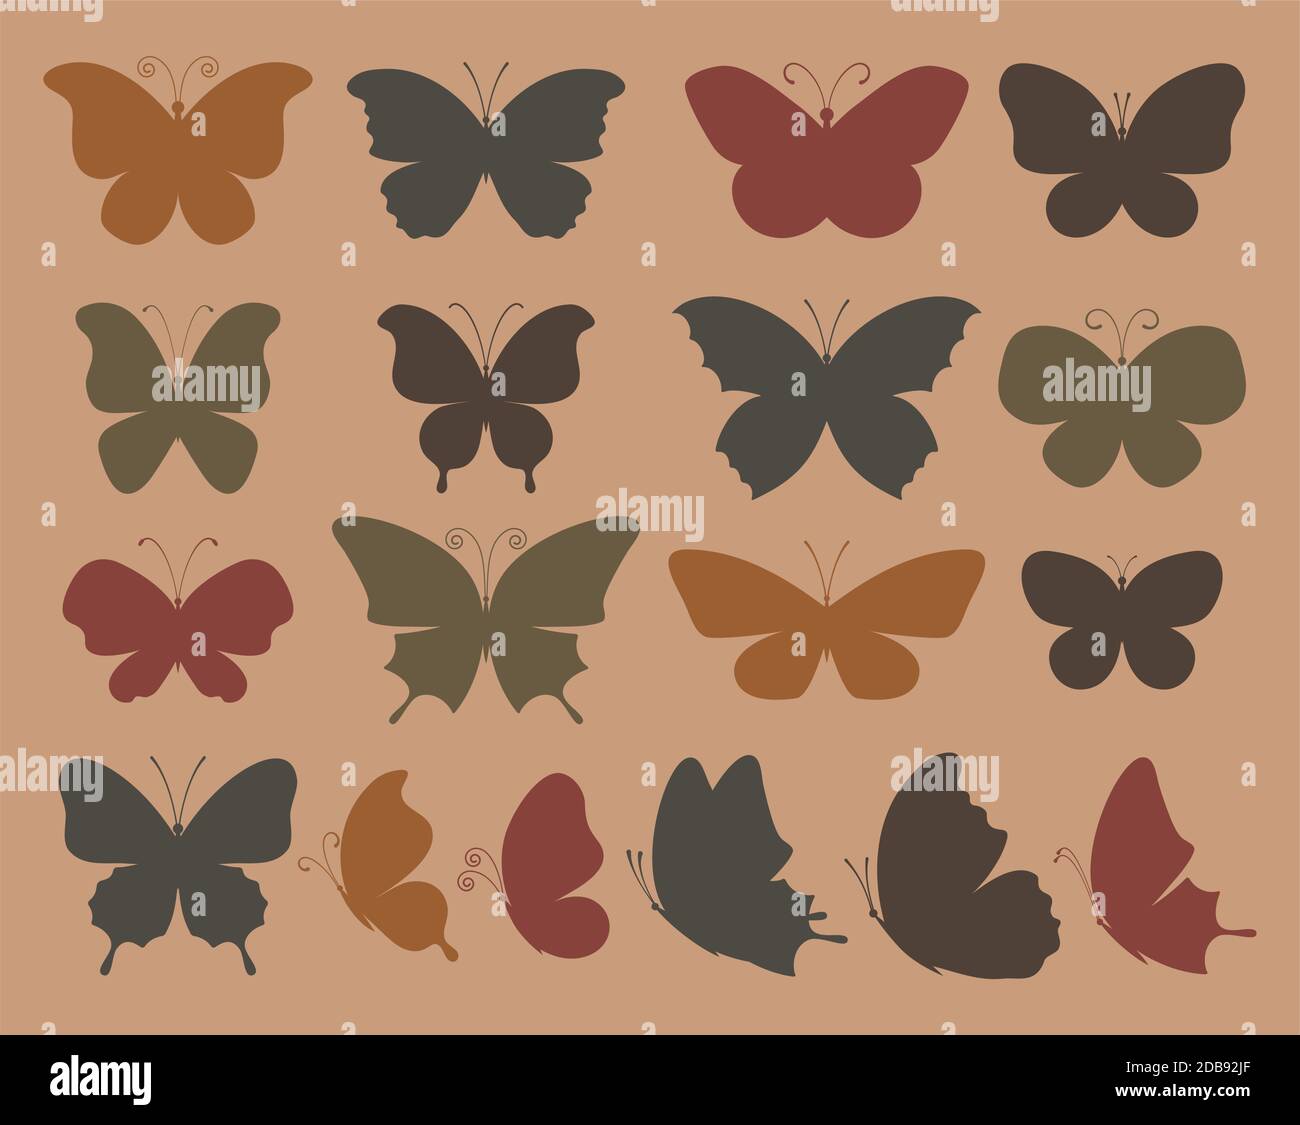 Set of butterflies for design. Stock Vector